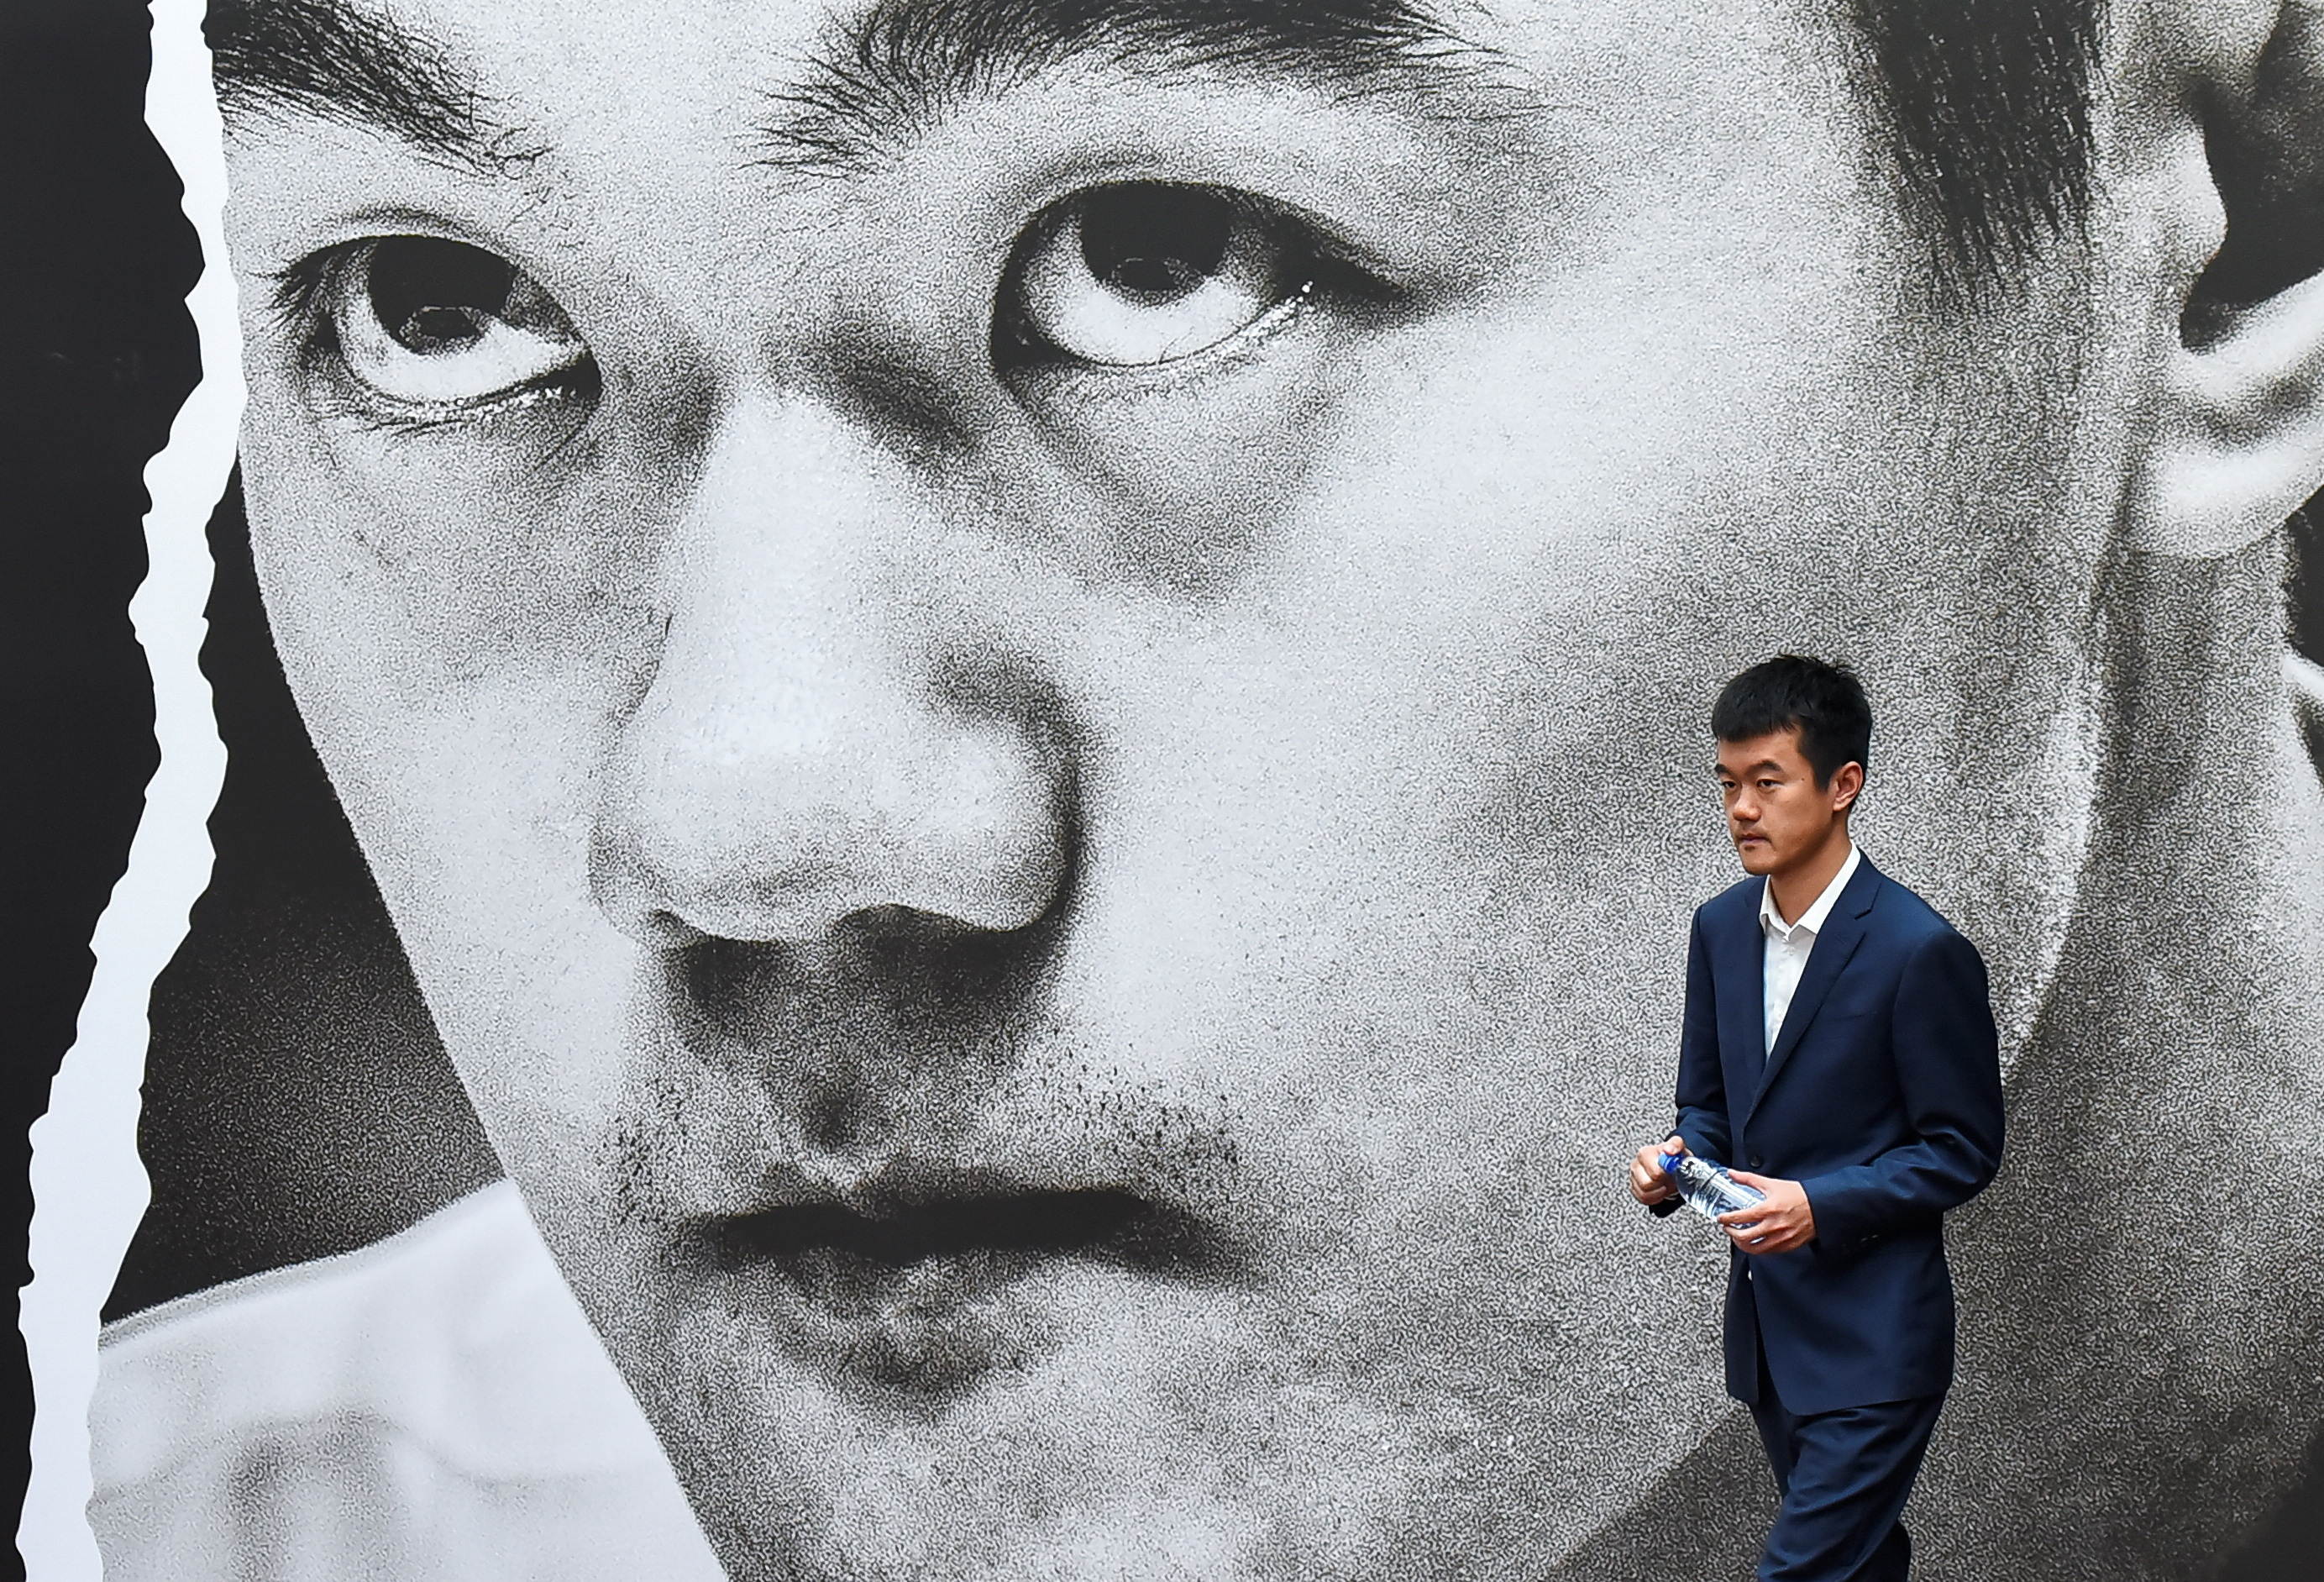 El campeón chino Liren Ding sale al escenario en el que se disputa el Mundial de ajedrez.